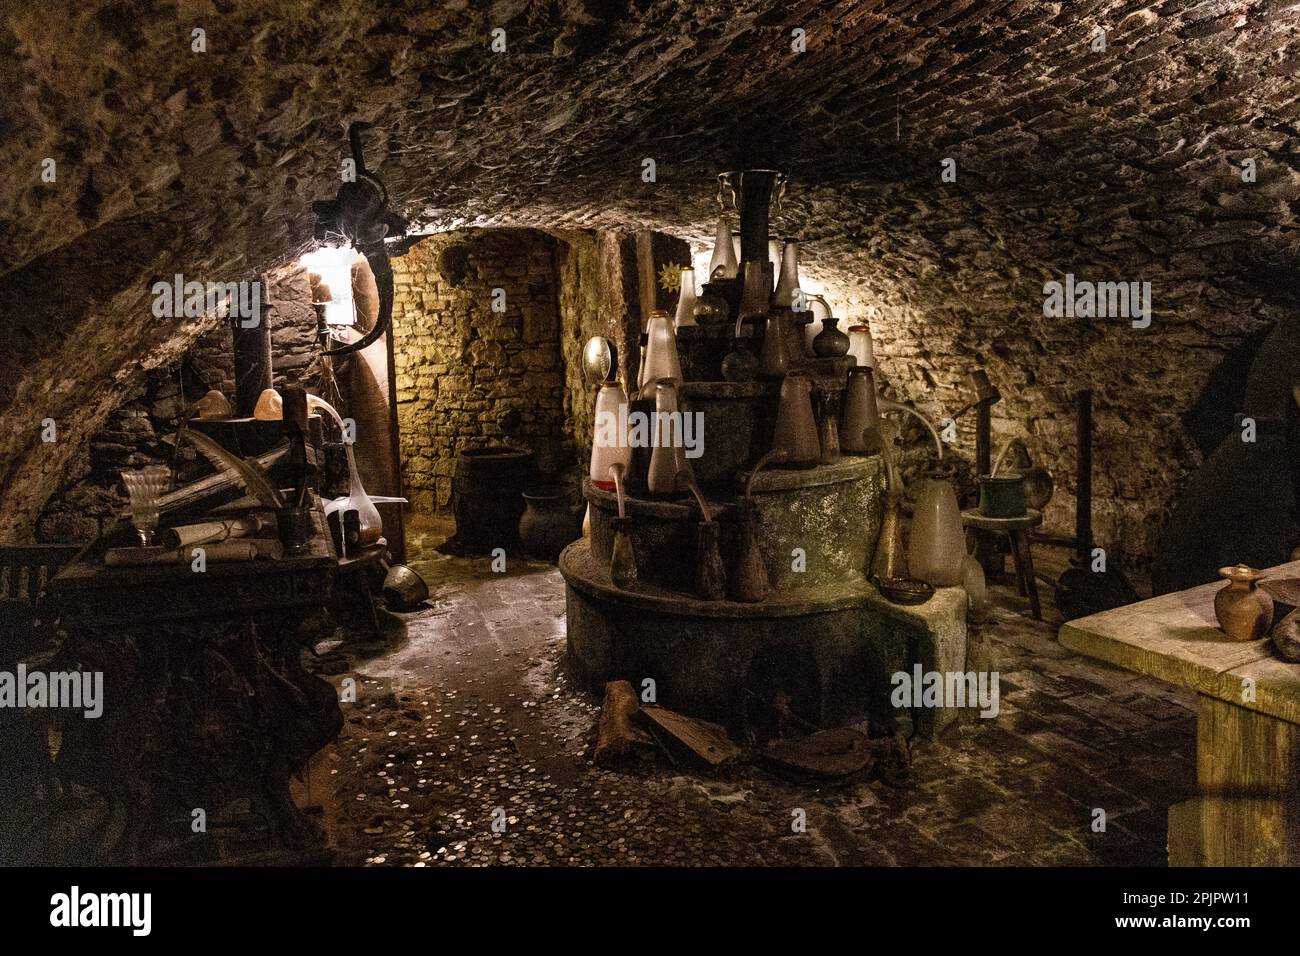 Laboratoire d'alchimie souterraine historique Speculum Alchemiae, Prague, République tchèque Banque D'Images